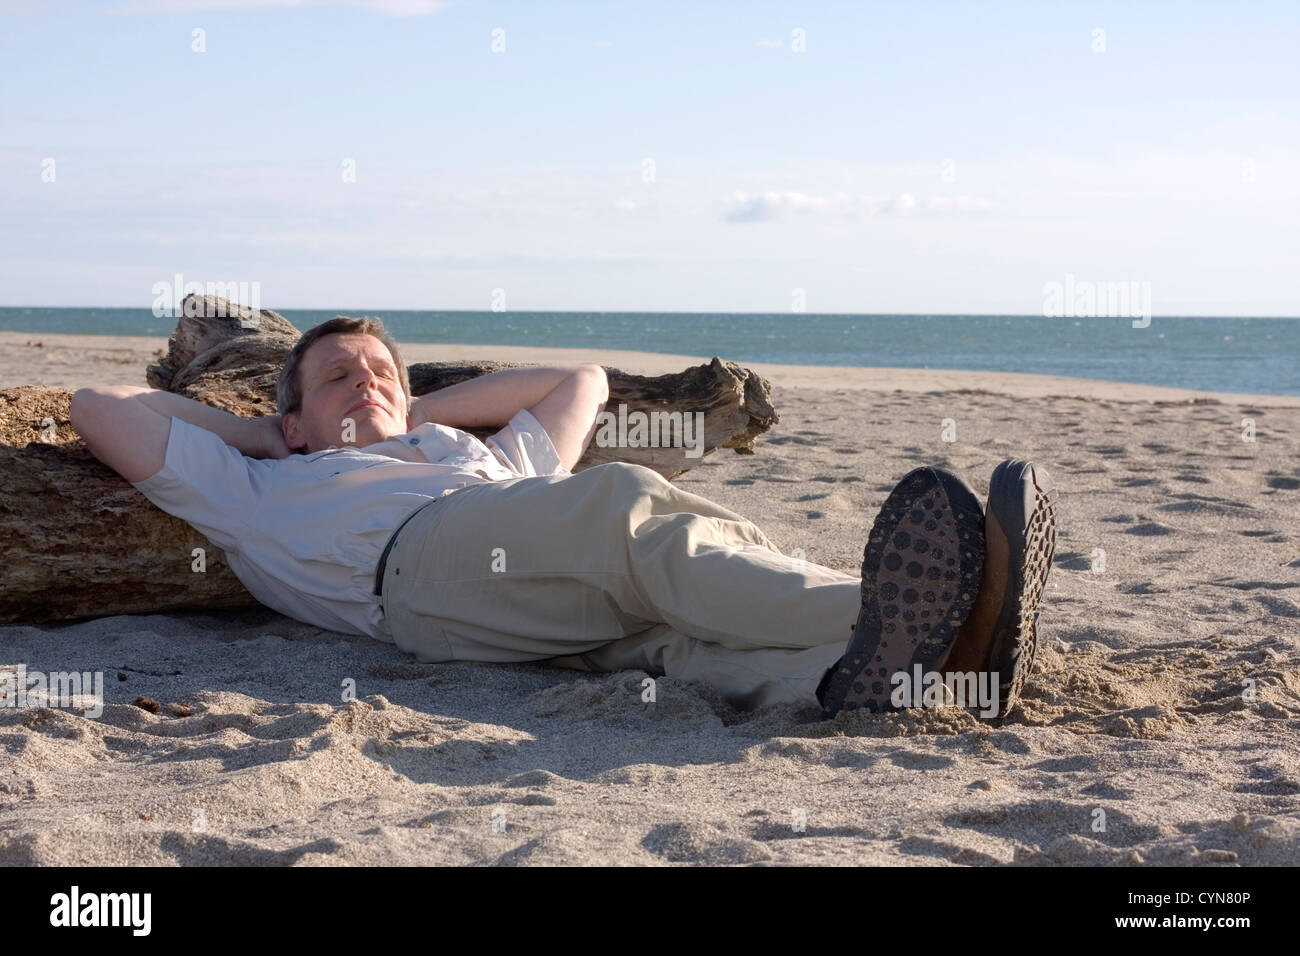 Man sleeping on beach Stock Photo